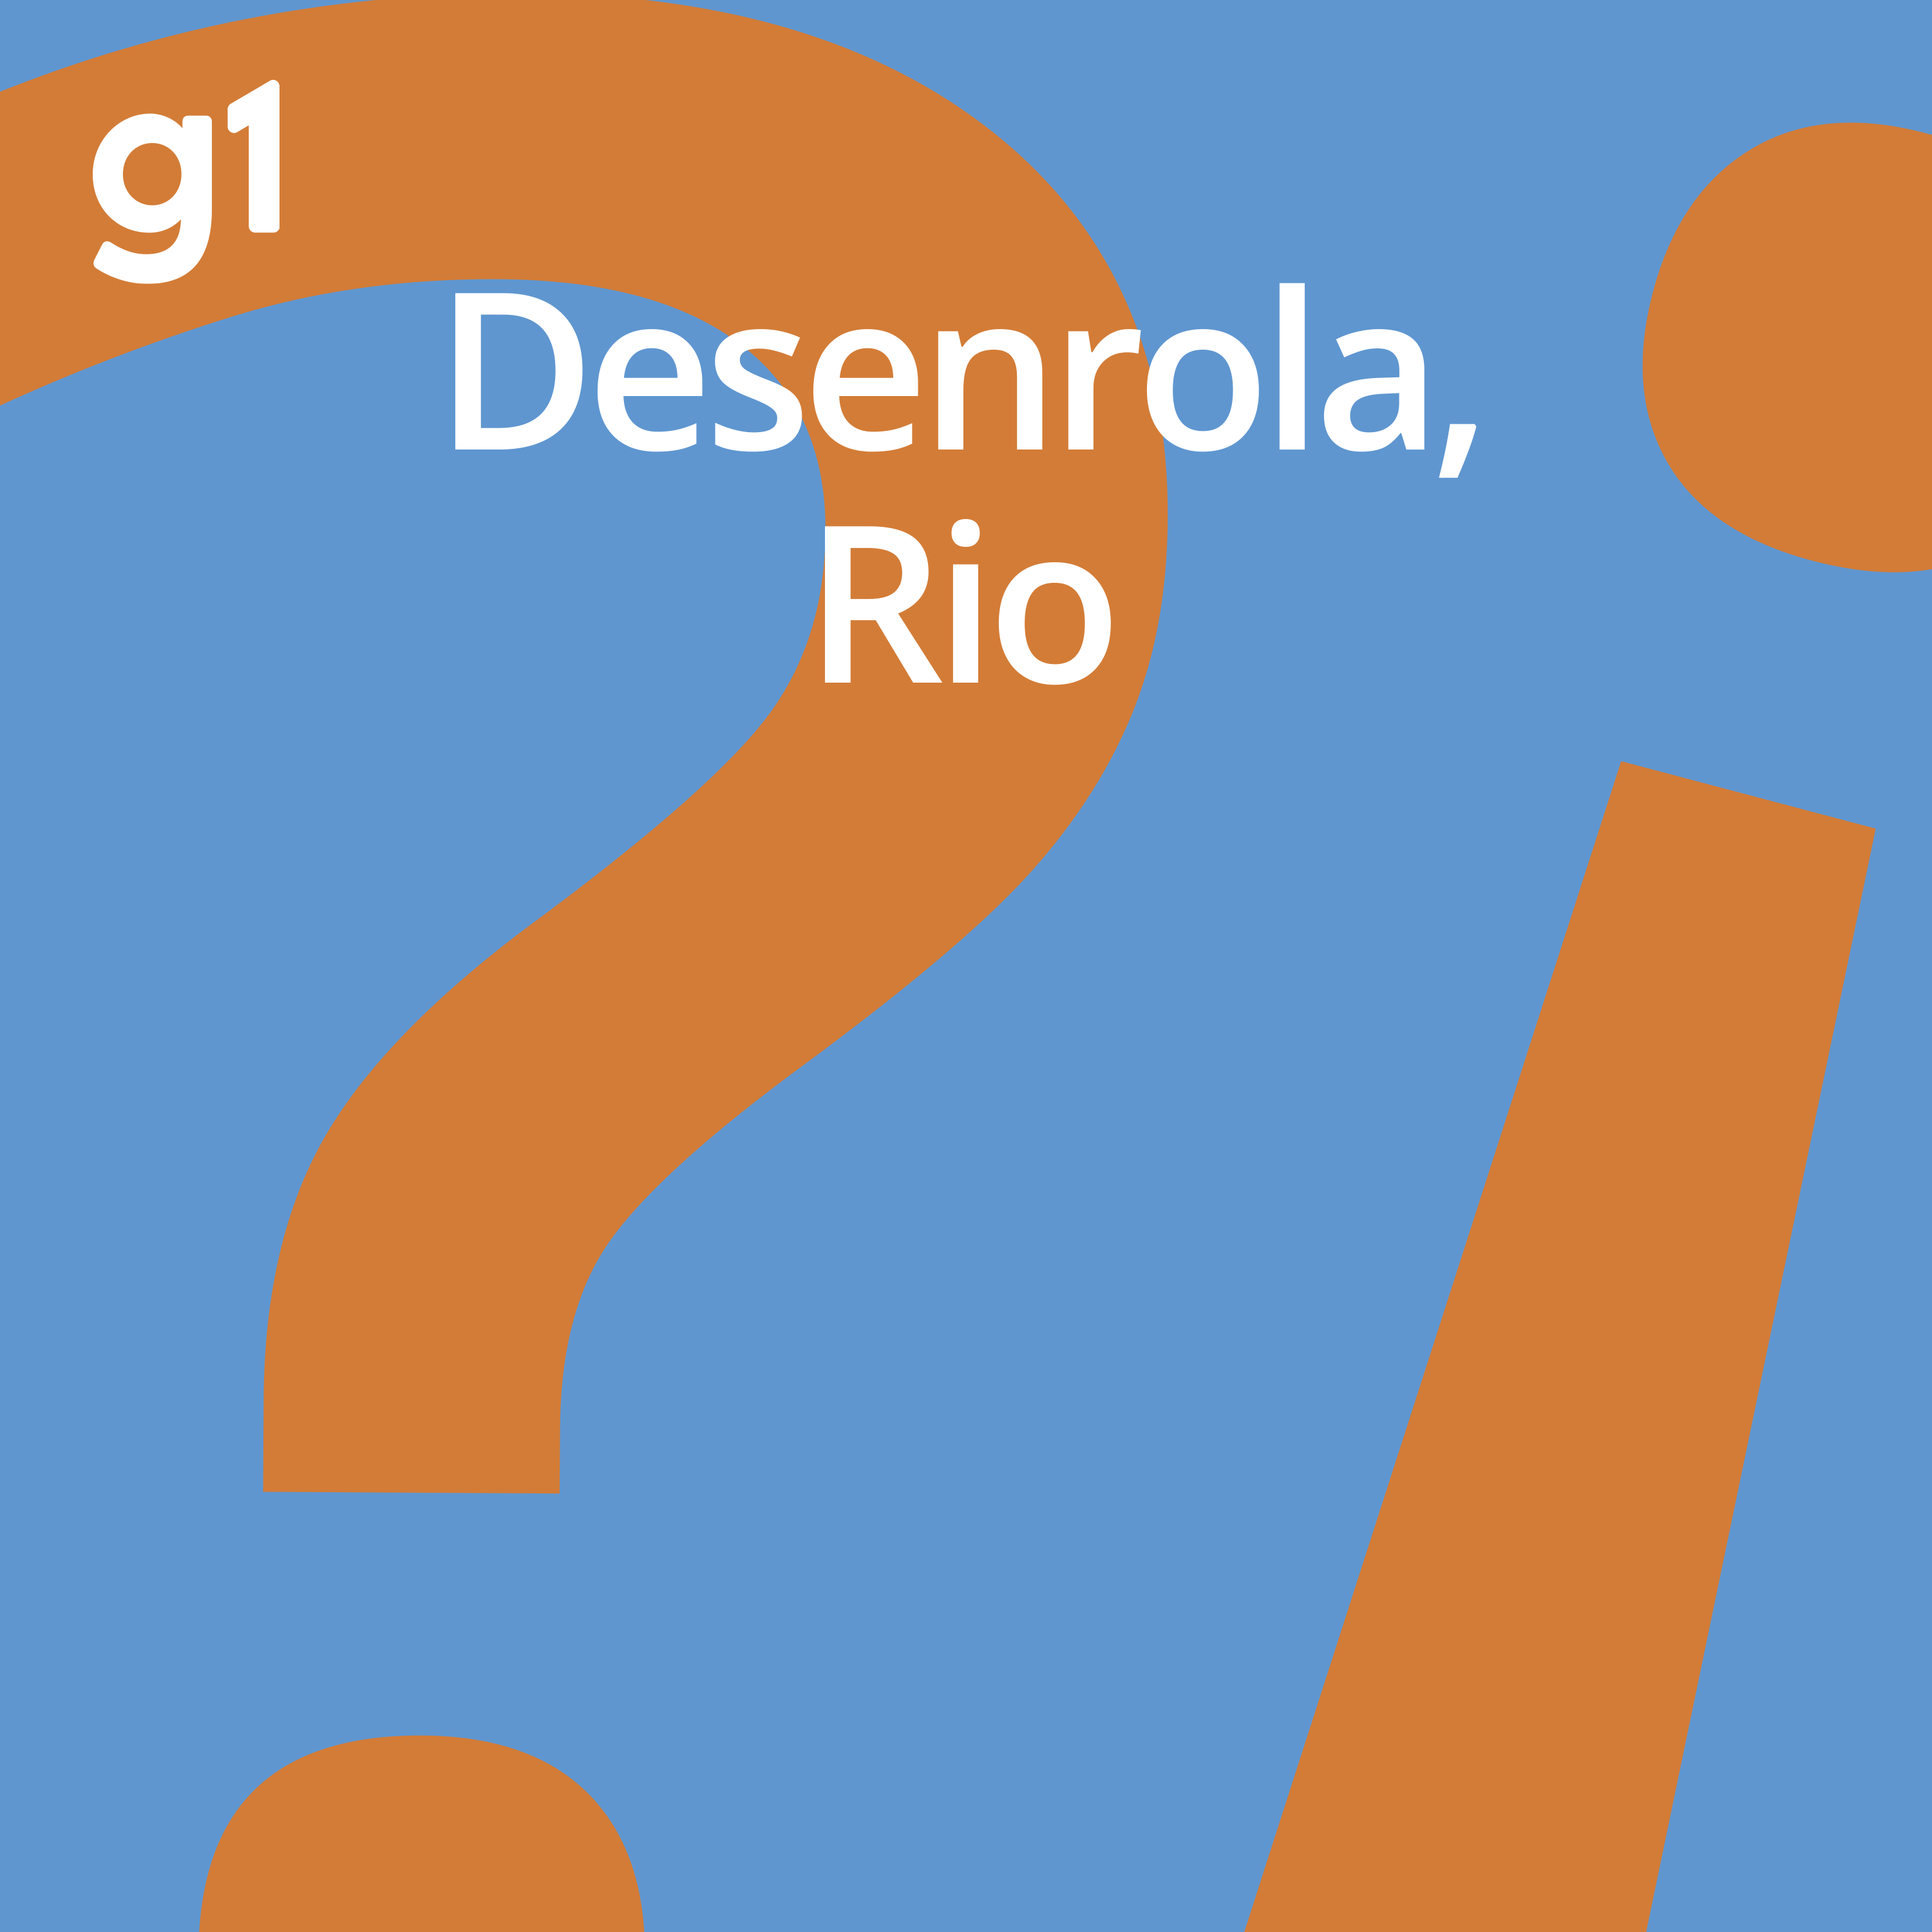 #81 Desenrola, Rio – Os desafios no transporte público